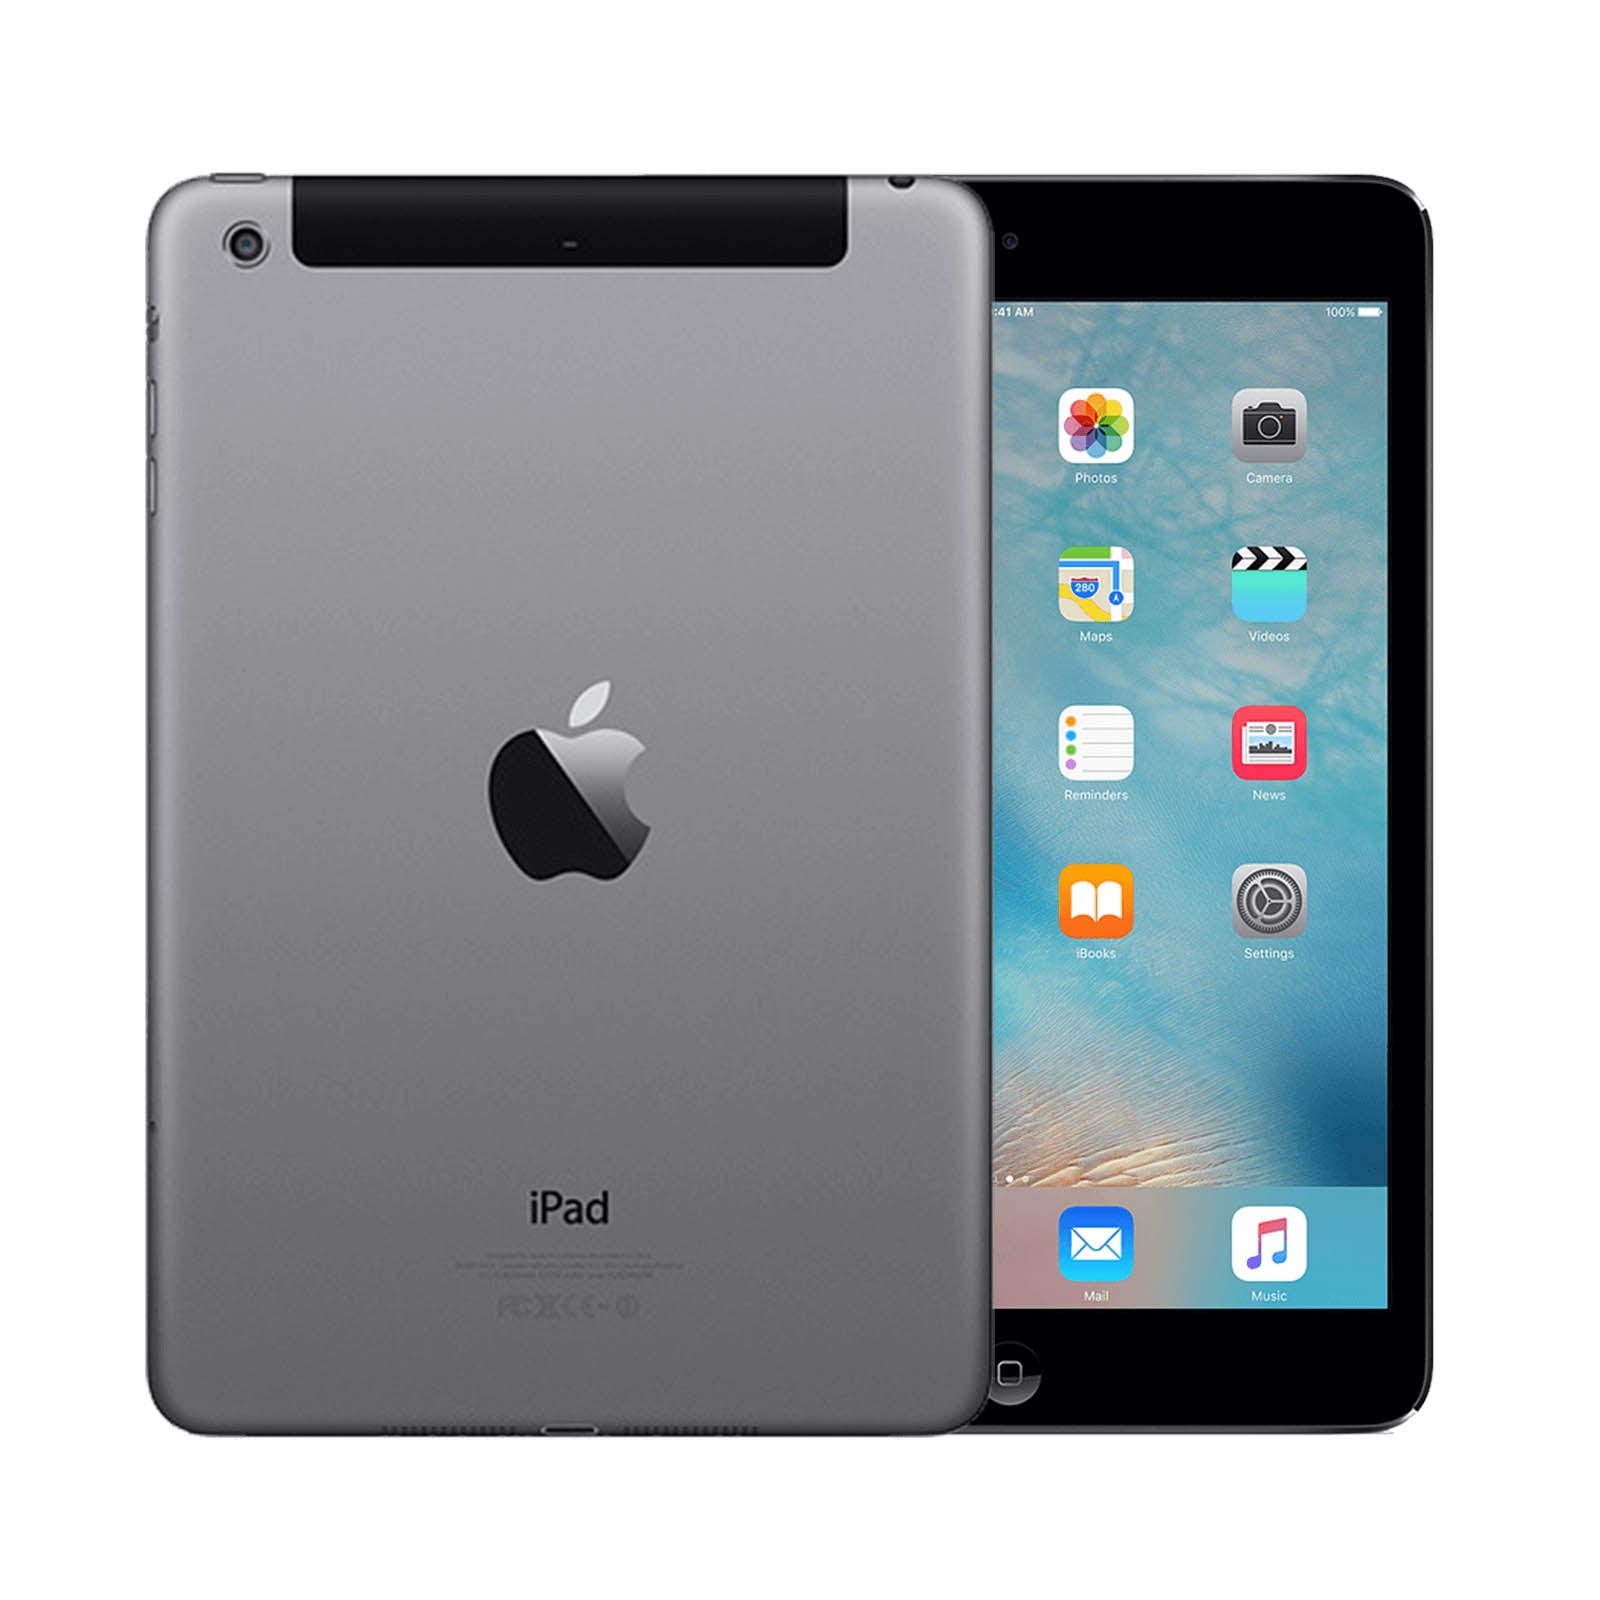 Apple iPad mini 2 128GB Black Pristine - Unlocked